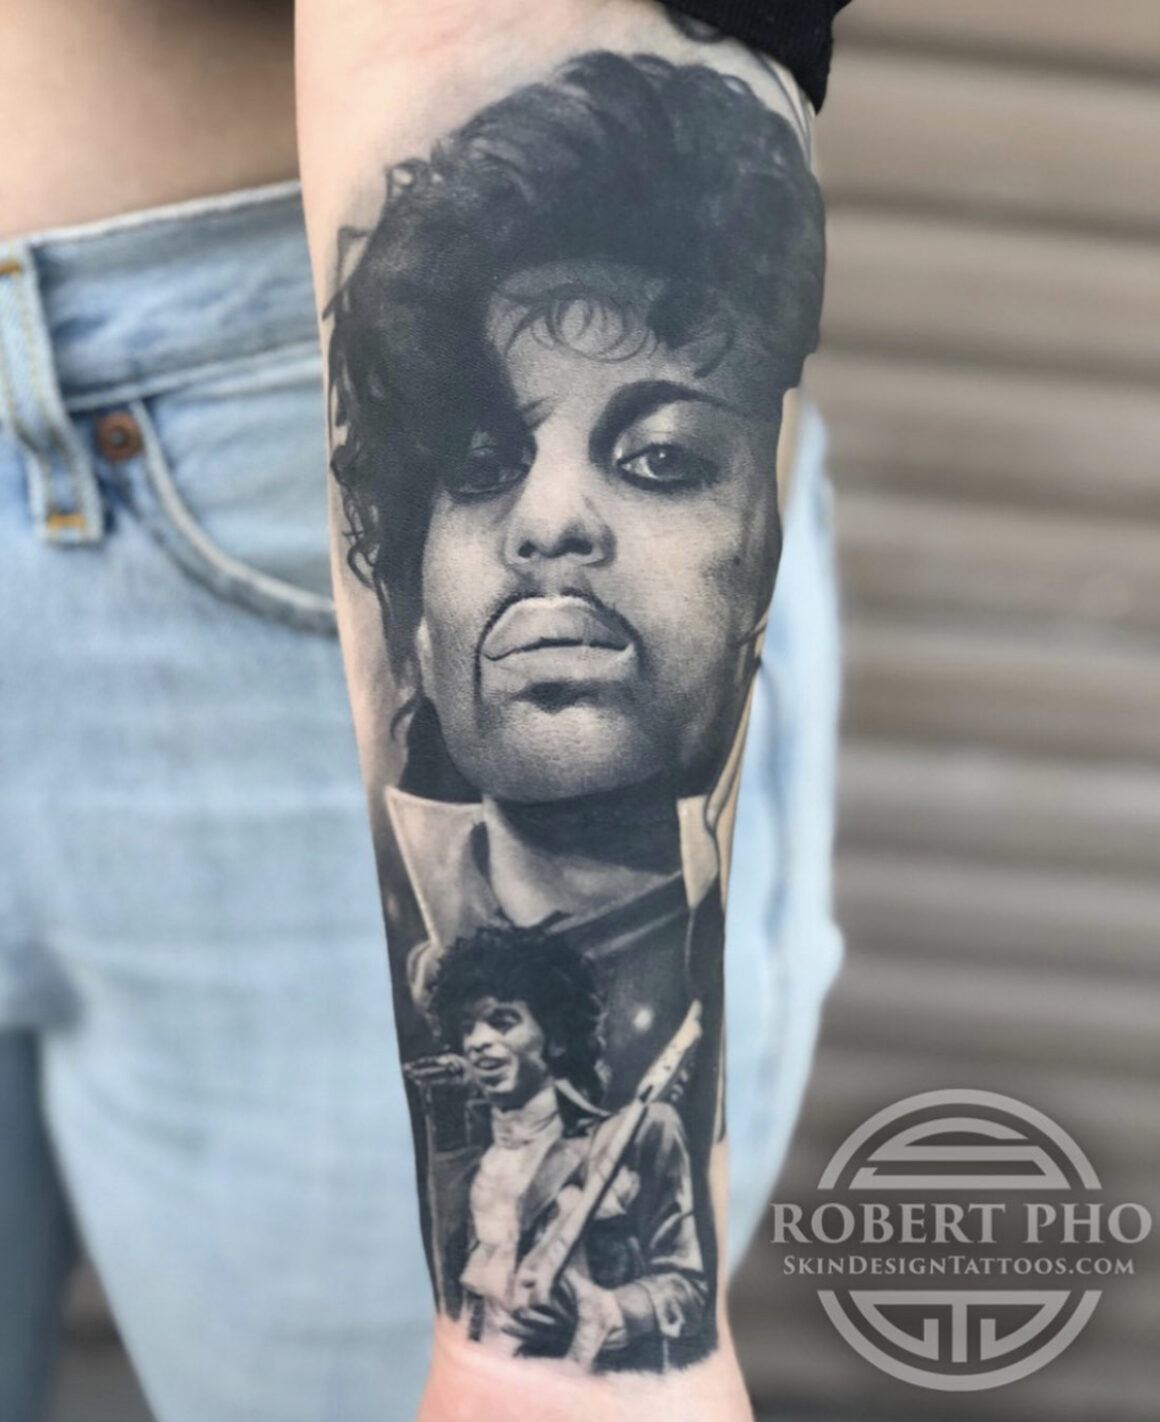 Robert Pho, Skin Design Tattoos, Las Vegas, USA